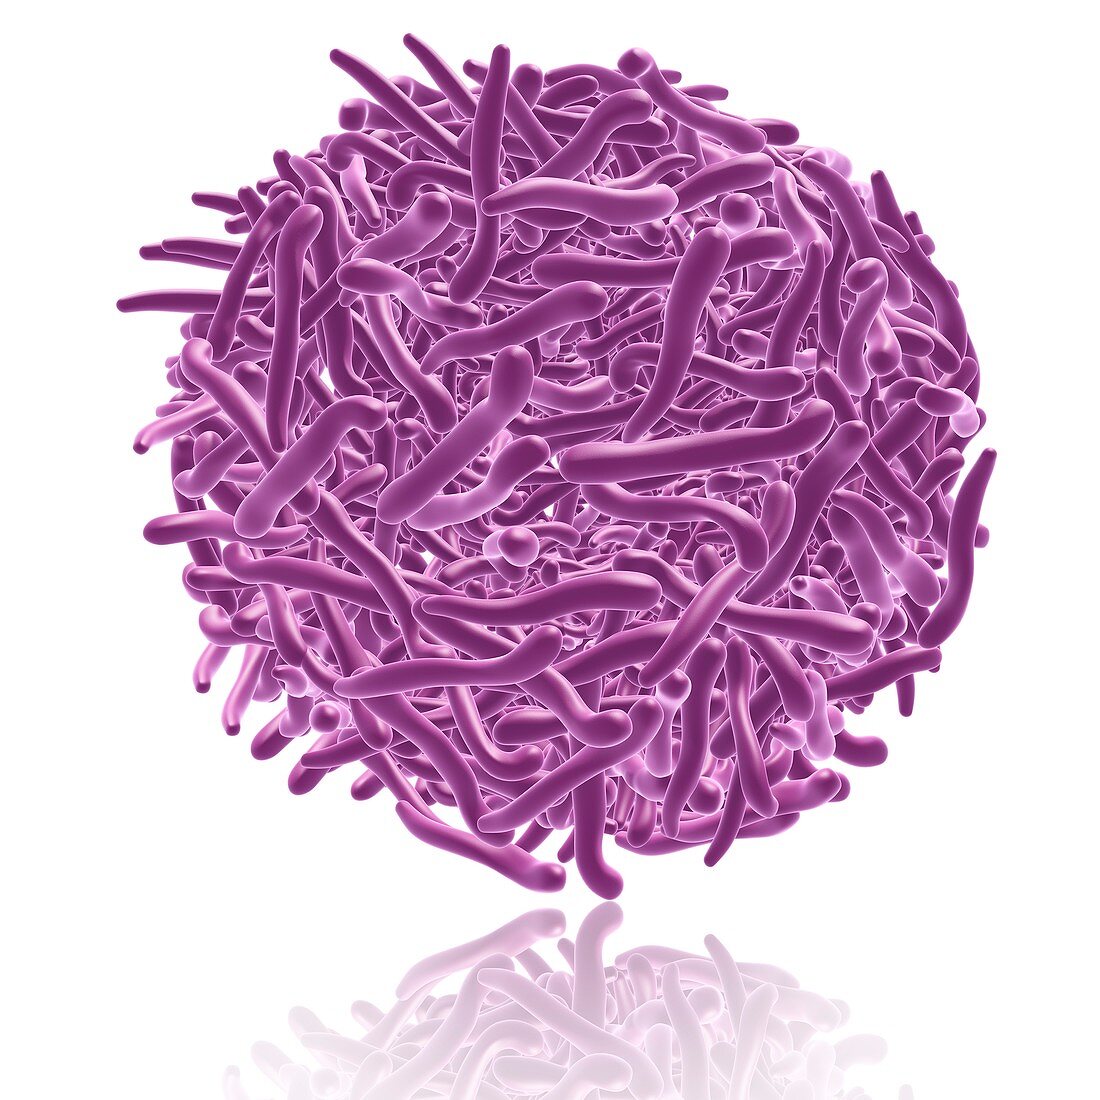 Densovirus virus particle, illustration